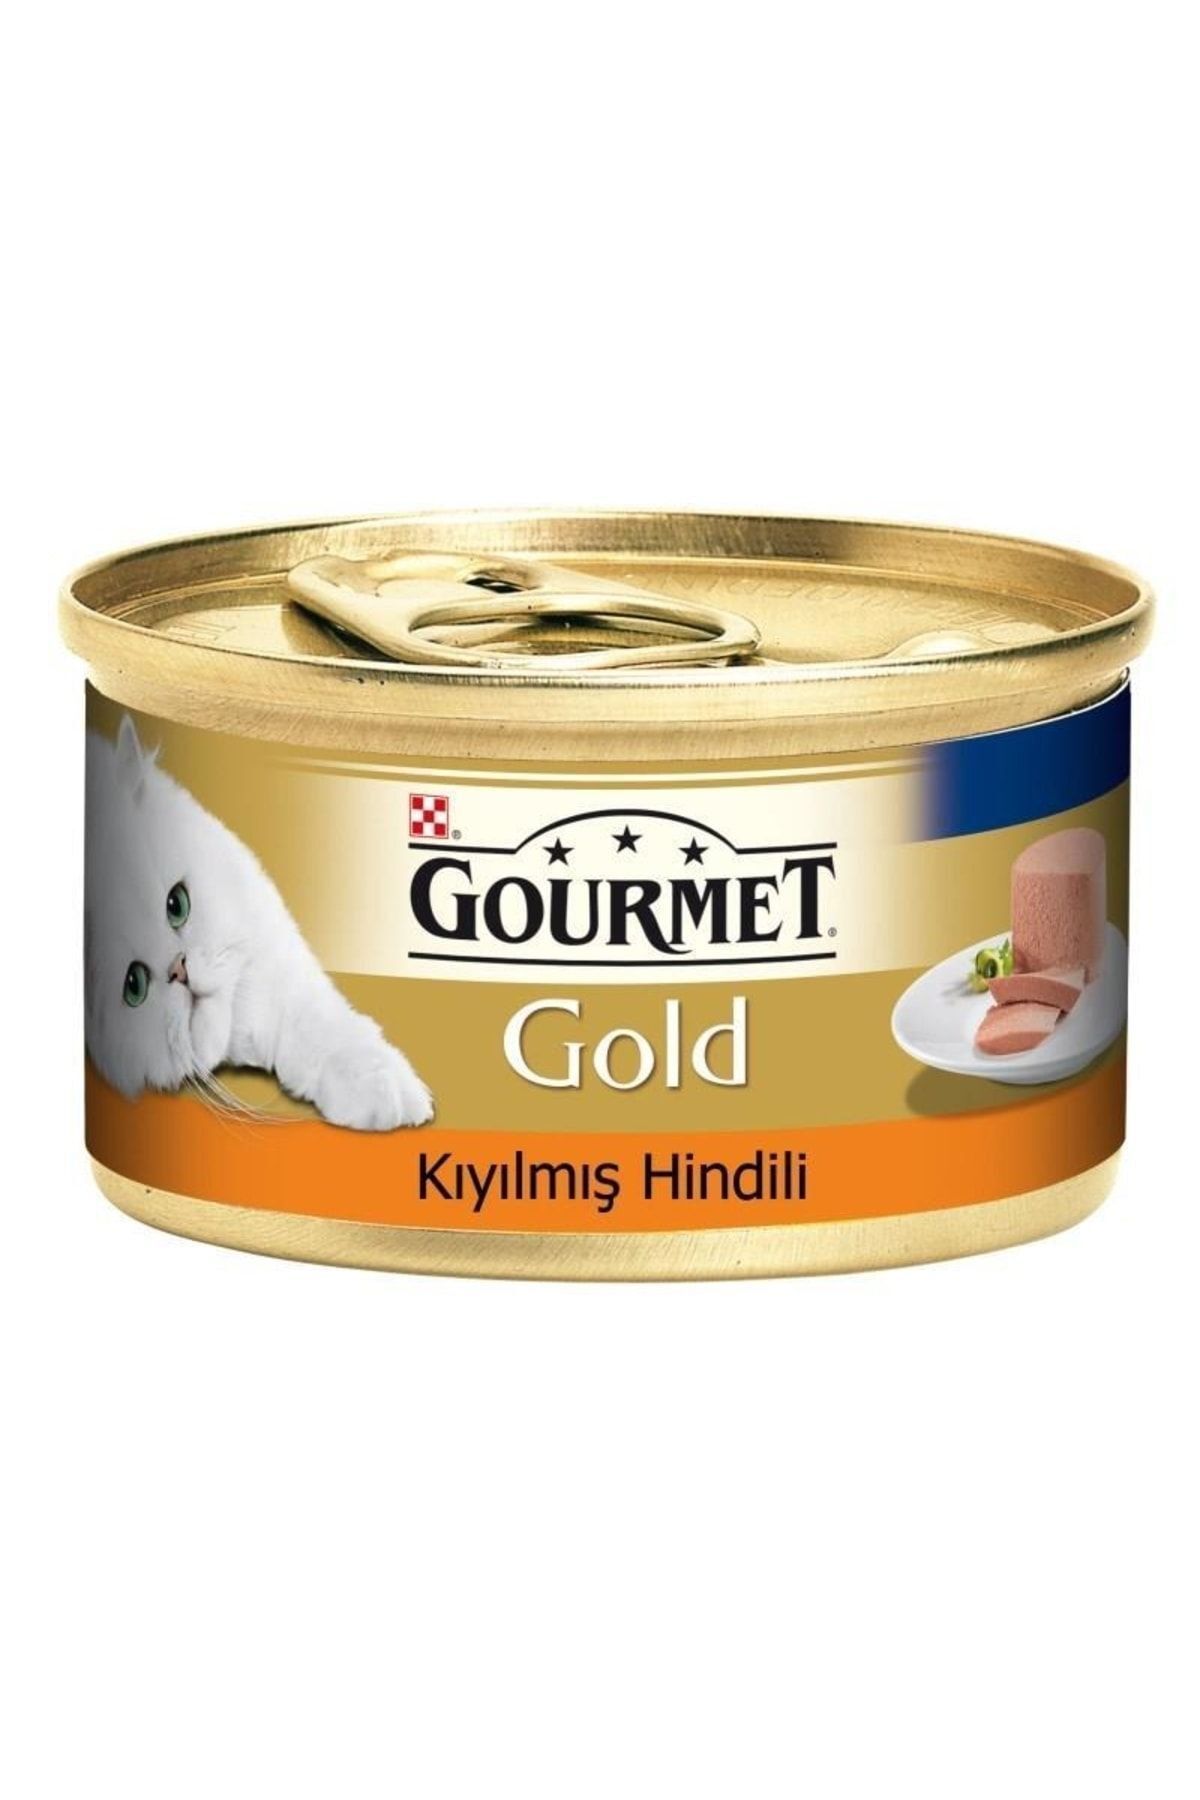 Gourmet Gold Kıyılmış Hindi Etli Kedi Konservesi 85gr